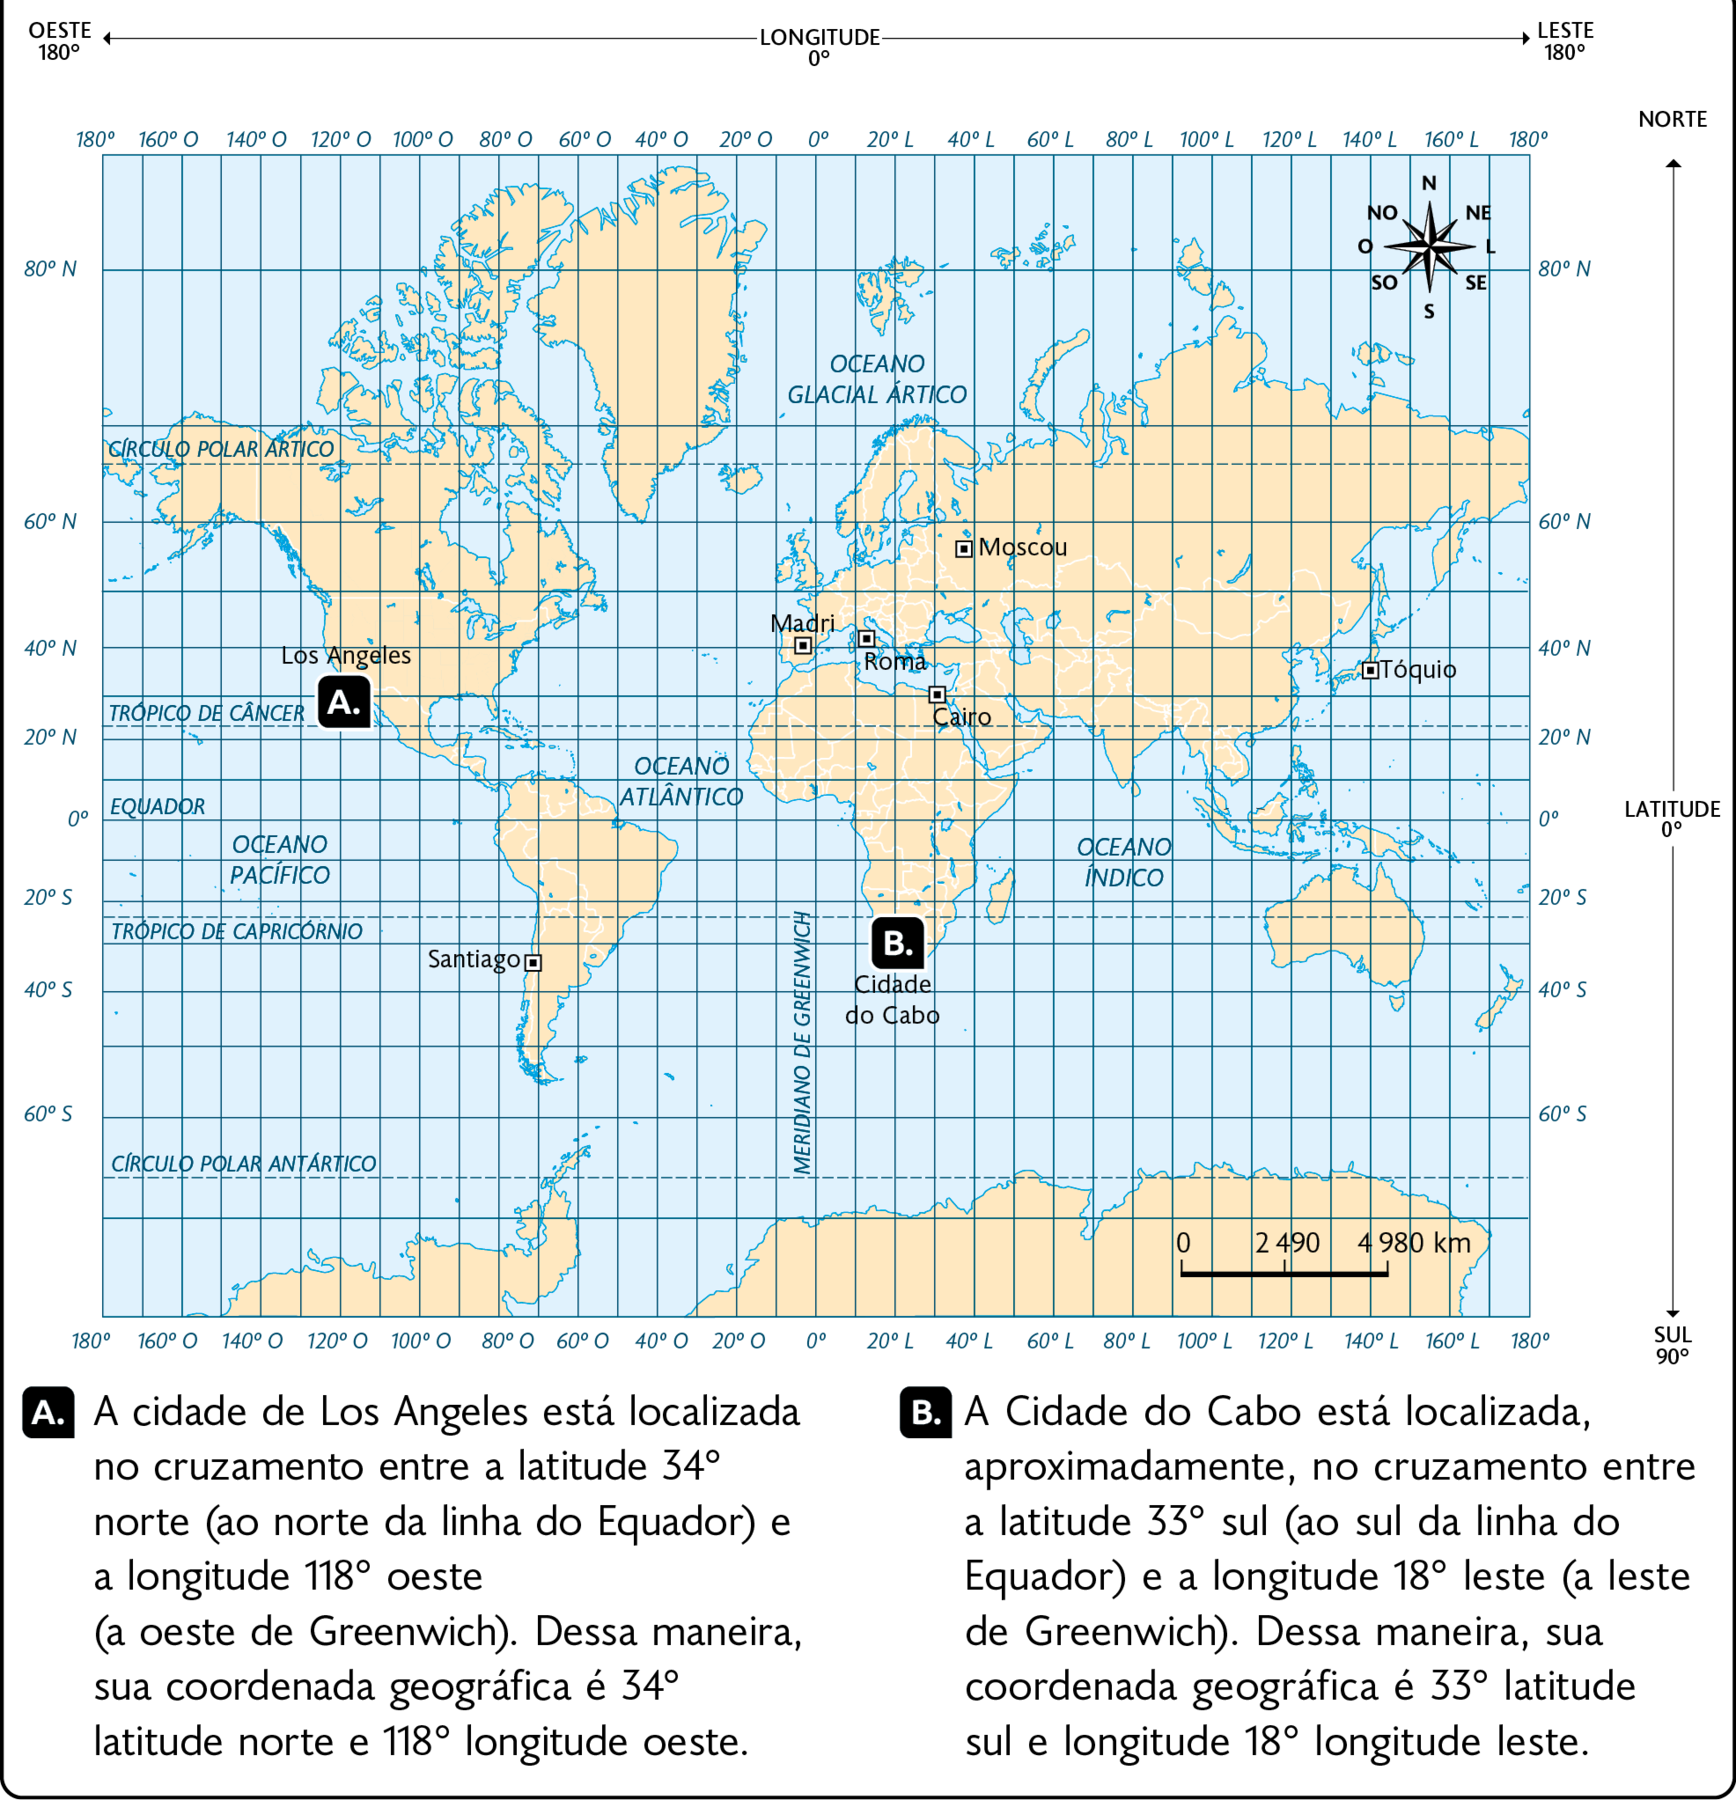 Mapa-múndi: coordenadas geográficas. O planisfério está destacando: Letra A, Los Angeles (Estados Unidos): latitude 34 graus norte e longitude 118 graus oeste, Letra B, Cidade do Cabo (África do Sul): latitude 33 graus sul e longitude 18 graus leste, Tóquio (Japão): latitude 35 graus norte e longitude 139 graus leste, Cairo (Egito): latitude 30 graus norte e longitude 31 graus leste, Madri (Espanha): latitude 40 graus norte e longitude 3 graus oeste, Moscou (Rússia): latitude 55 graus norte e longitude 37 graus leste, Roma (Itália): latitude 41 graus norte e longitude 12 graus leste, Santiago (Chile): latitude 33 graus sul e longitude 70 graus oeste. Rosa dos ventos e na parte inferior, a escala: 2490 quilômetros por centímetro. Abaixo, A: A cidade de Los Angeles está localizada no cruzamento entre a latitude 34° norte (ao norte da linha do Equador) e a longitude 118° oeste (a oeste de Greenwich). Dessa maneira, sua coordenada geográfica é 34° latitude norte e 118° longitude oeste. B: A Cidade do Cabo está localizada, aproximadamente, no cruzamento entre a latitude 33° sul (ao sul da linha do Equador) e a longitude 18° leste (a leste de Greenwich). Dessa maneira, sua coordenada geográfica é 33° latitude sul e longitude 18° longitude leste.